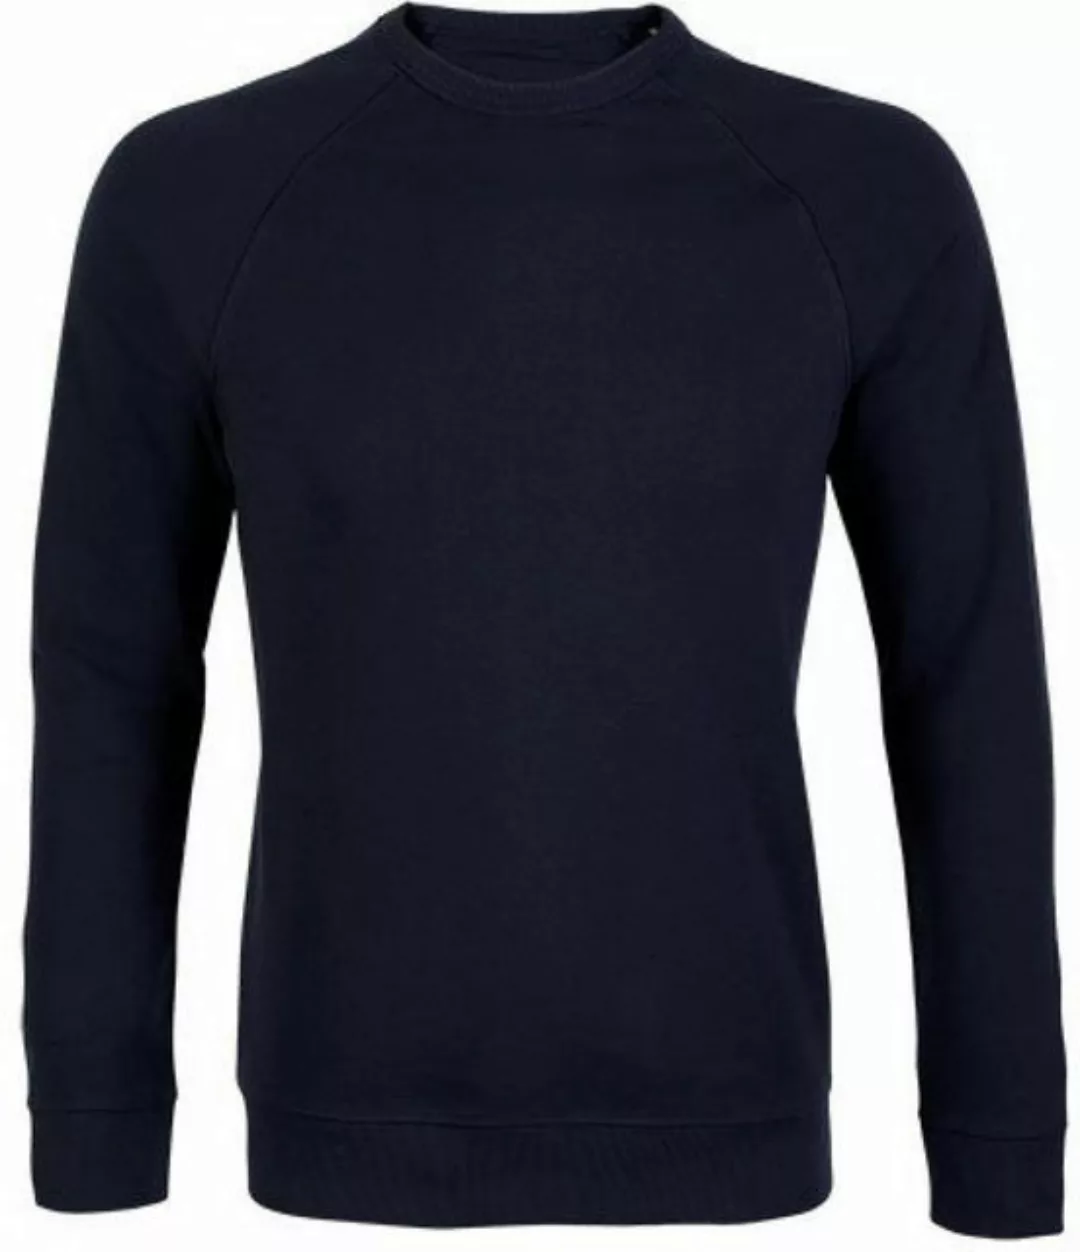 Neoblu Sweatshirt Men´s French Terry Sweatshirt Nelson S bis 4XL günstig online kaufen